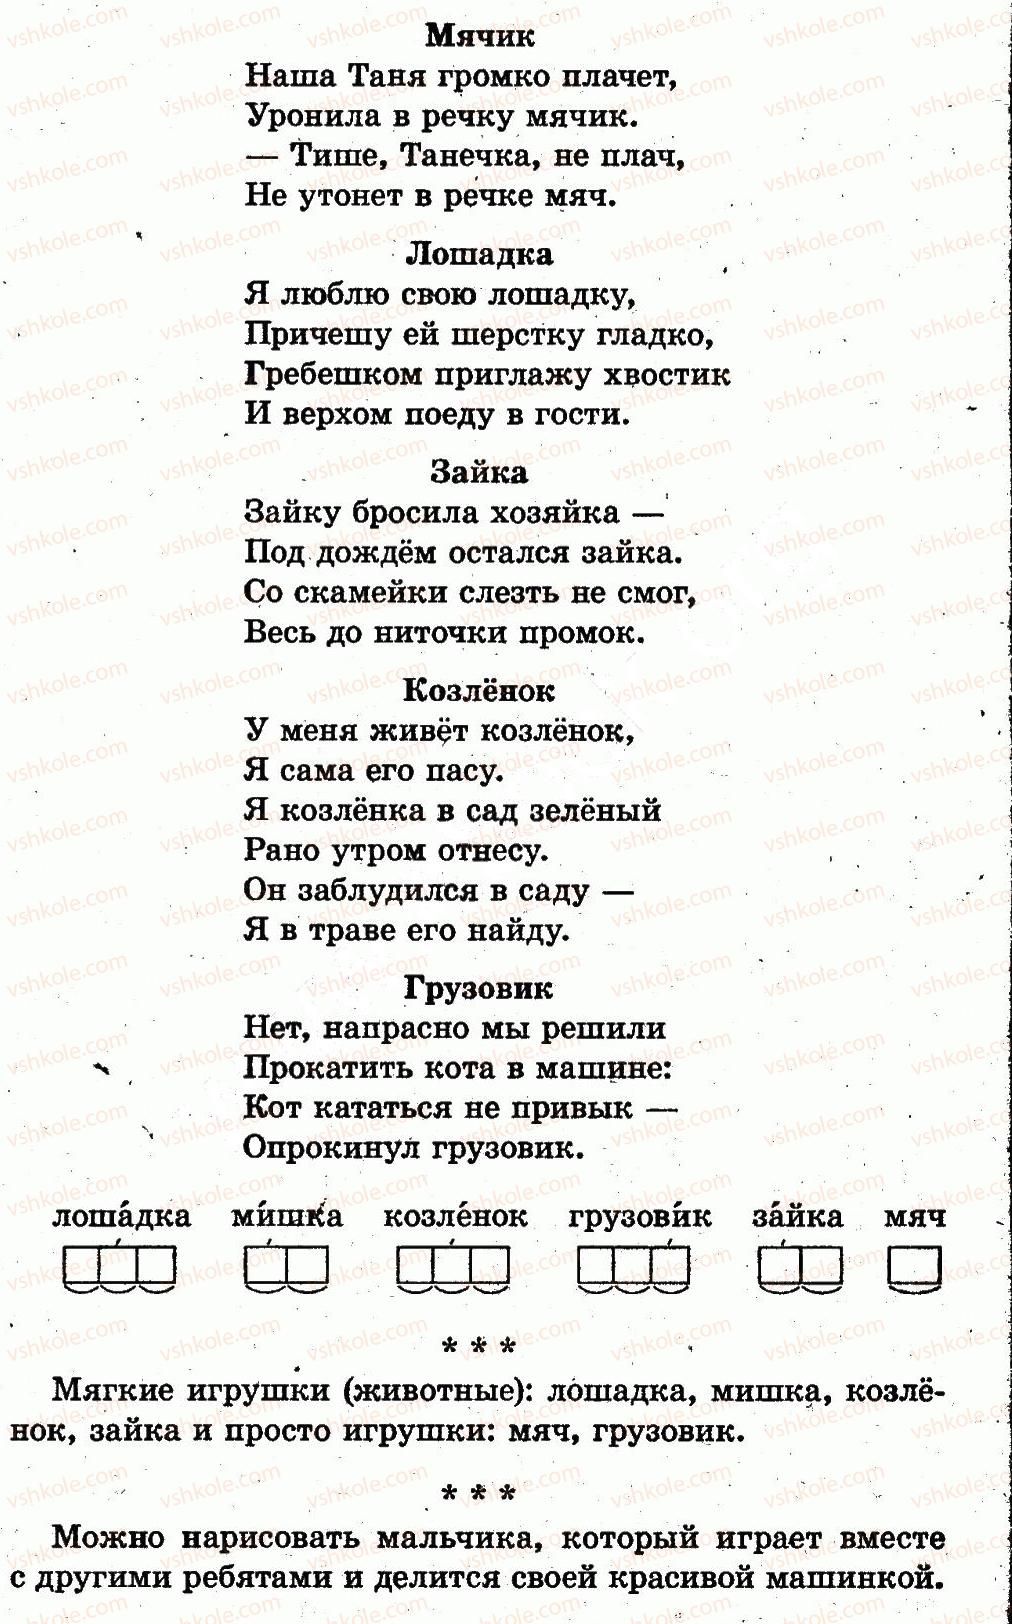 1-russkij-yazyk-in-lapshina-nn-zorka-2012--igry-igrushki-страница104-rnd7707.jpg